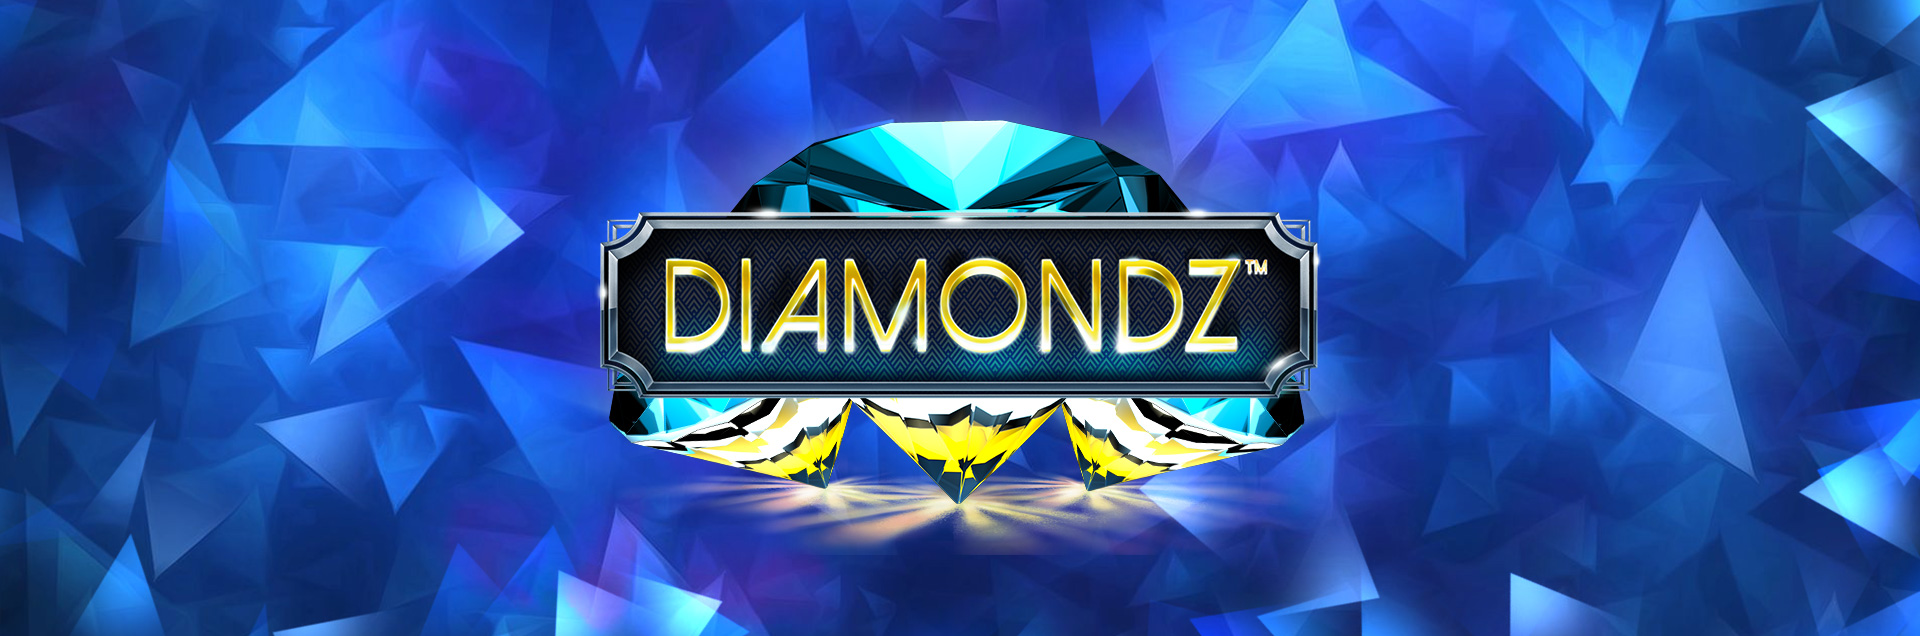 DiamondZ header games